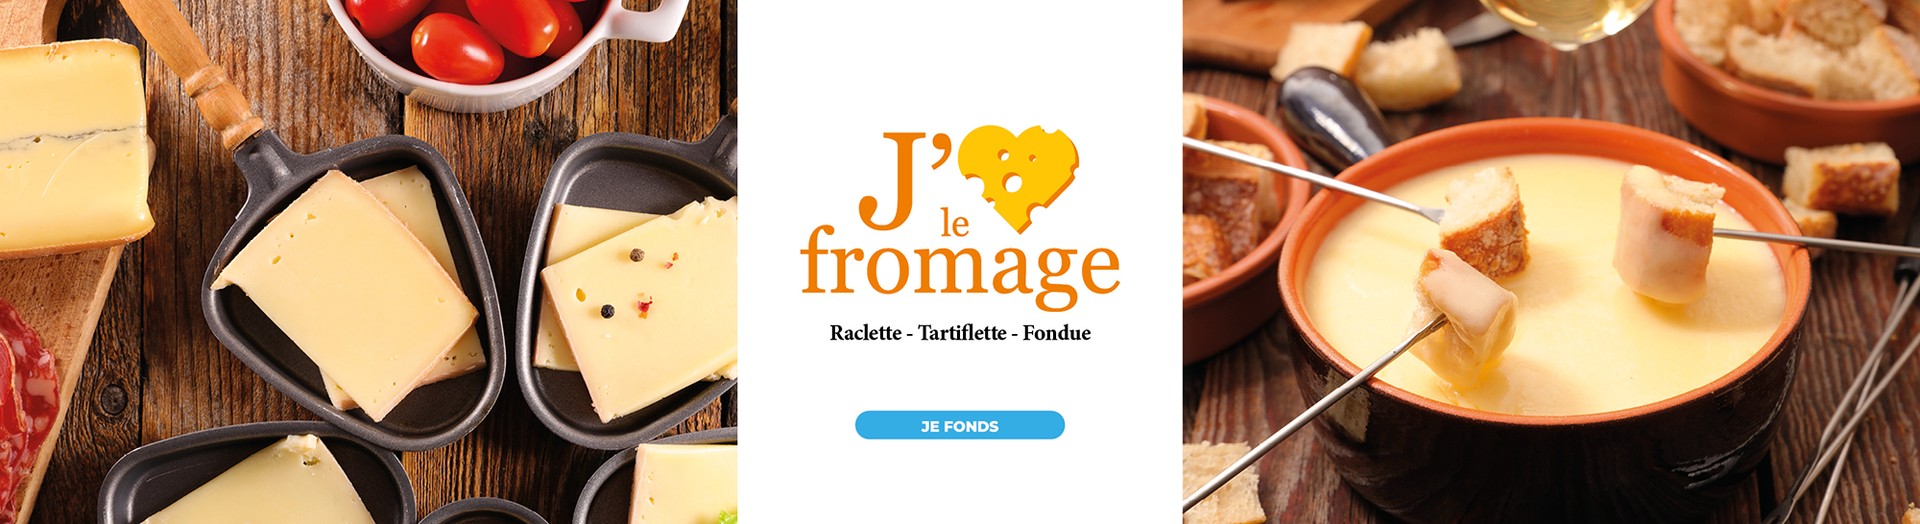 Retrouvez notre sélection de produits pour vos plats d'hiver : raclette, tartiflette, fondue...